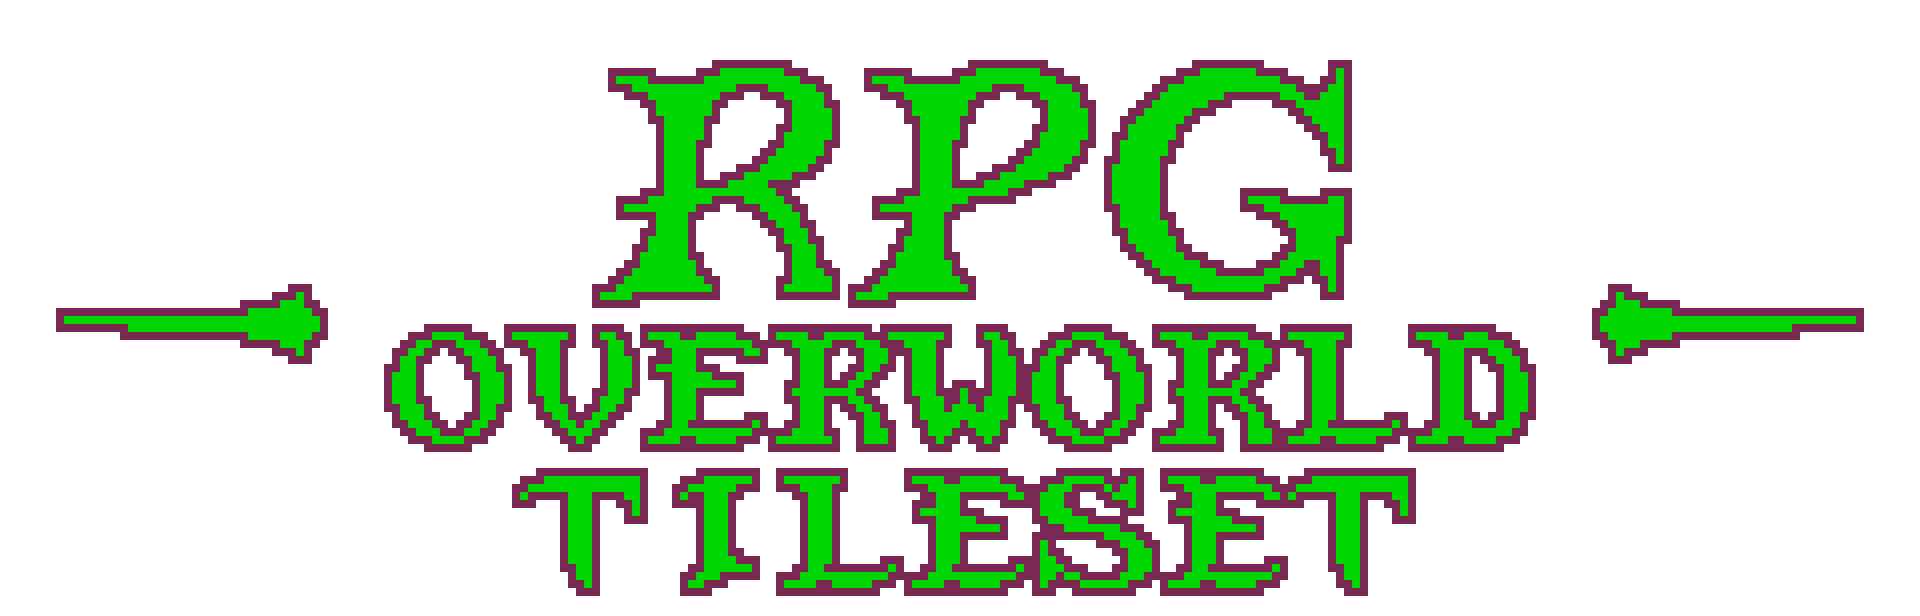 RPG Overworld Tileset